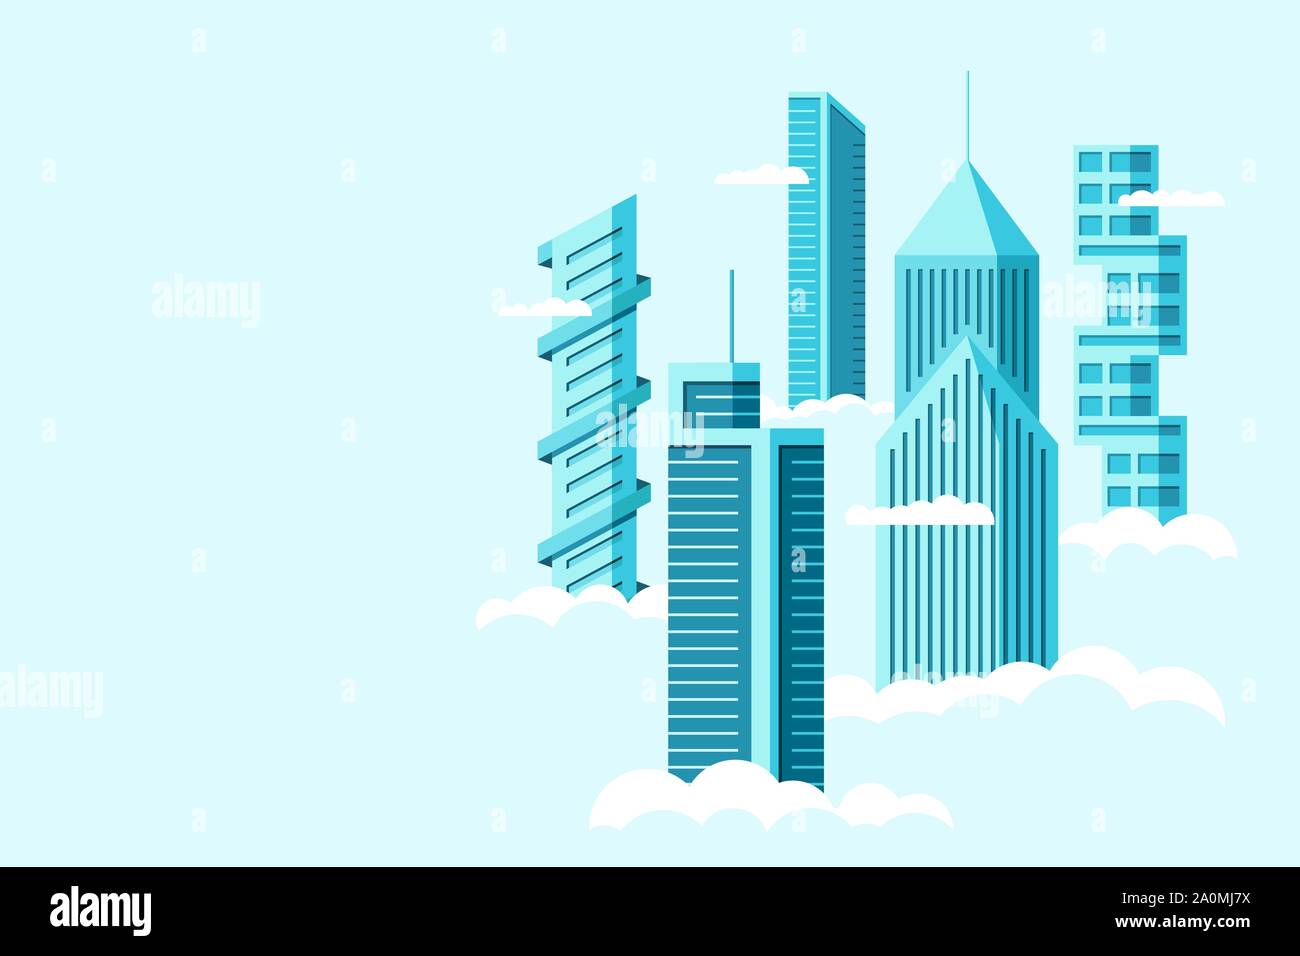 Città futura dettagliata con diversi edifici alta architettura grattacieli appartamenti sopra le nuvole. Città futuristica grafica del paesaggio urbano. Costruzione immobiliare vettoriale sopra l'illustrazione del cielo Illustrazione Vettoriale